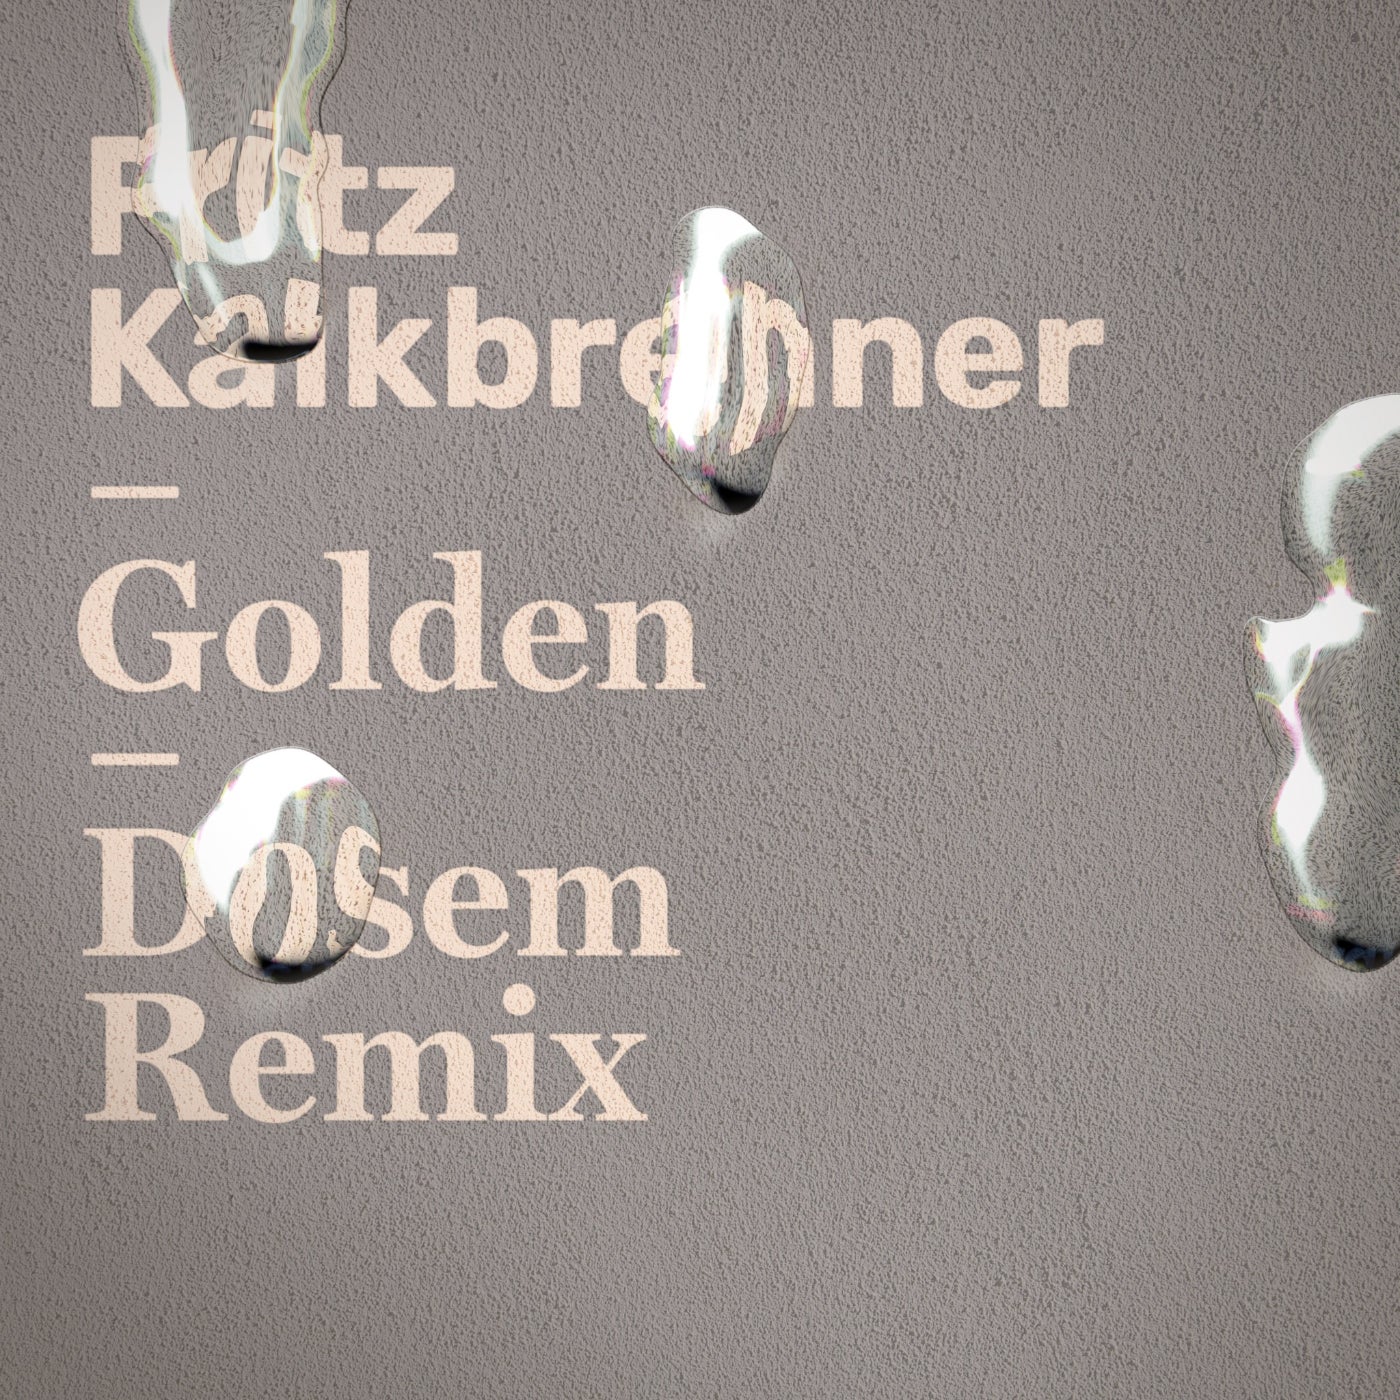 image cover: Fritz Kalkbrenner - Golden (Dosem Remix) [4050538668155] / 4050538668155